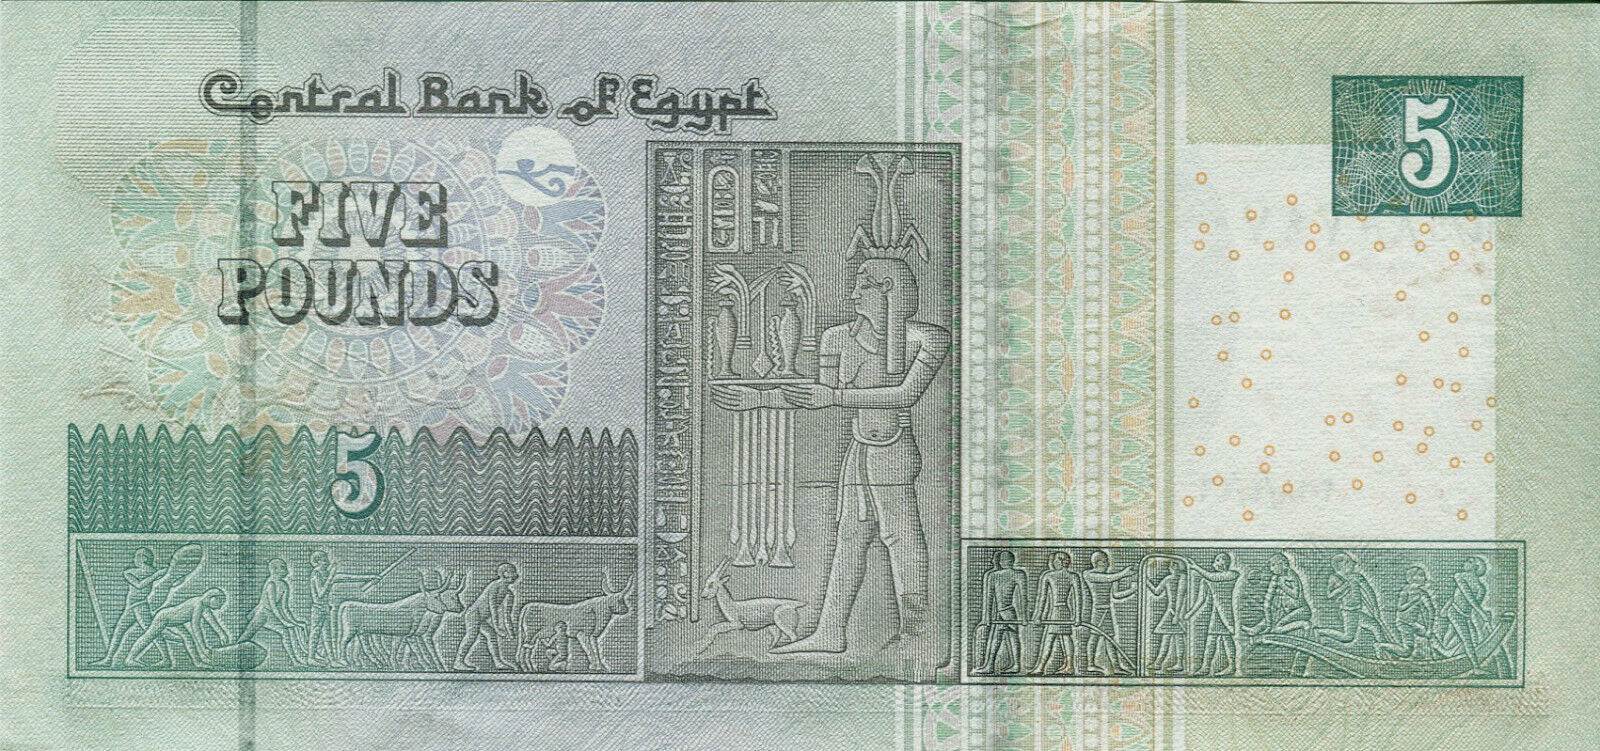 ÄGYPTEN 5 PFUND BANKNOTE 2018 UNC